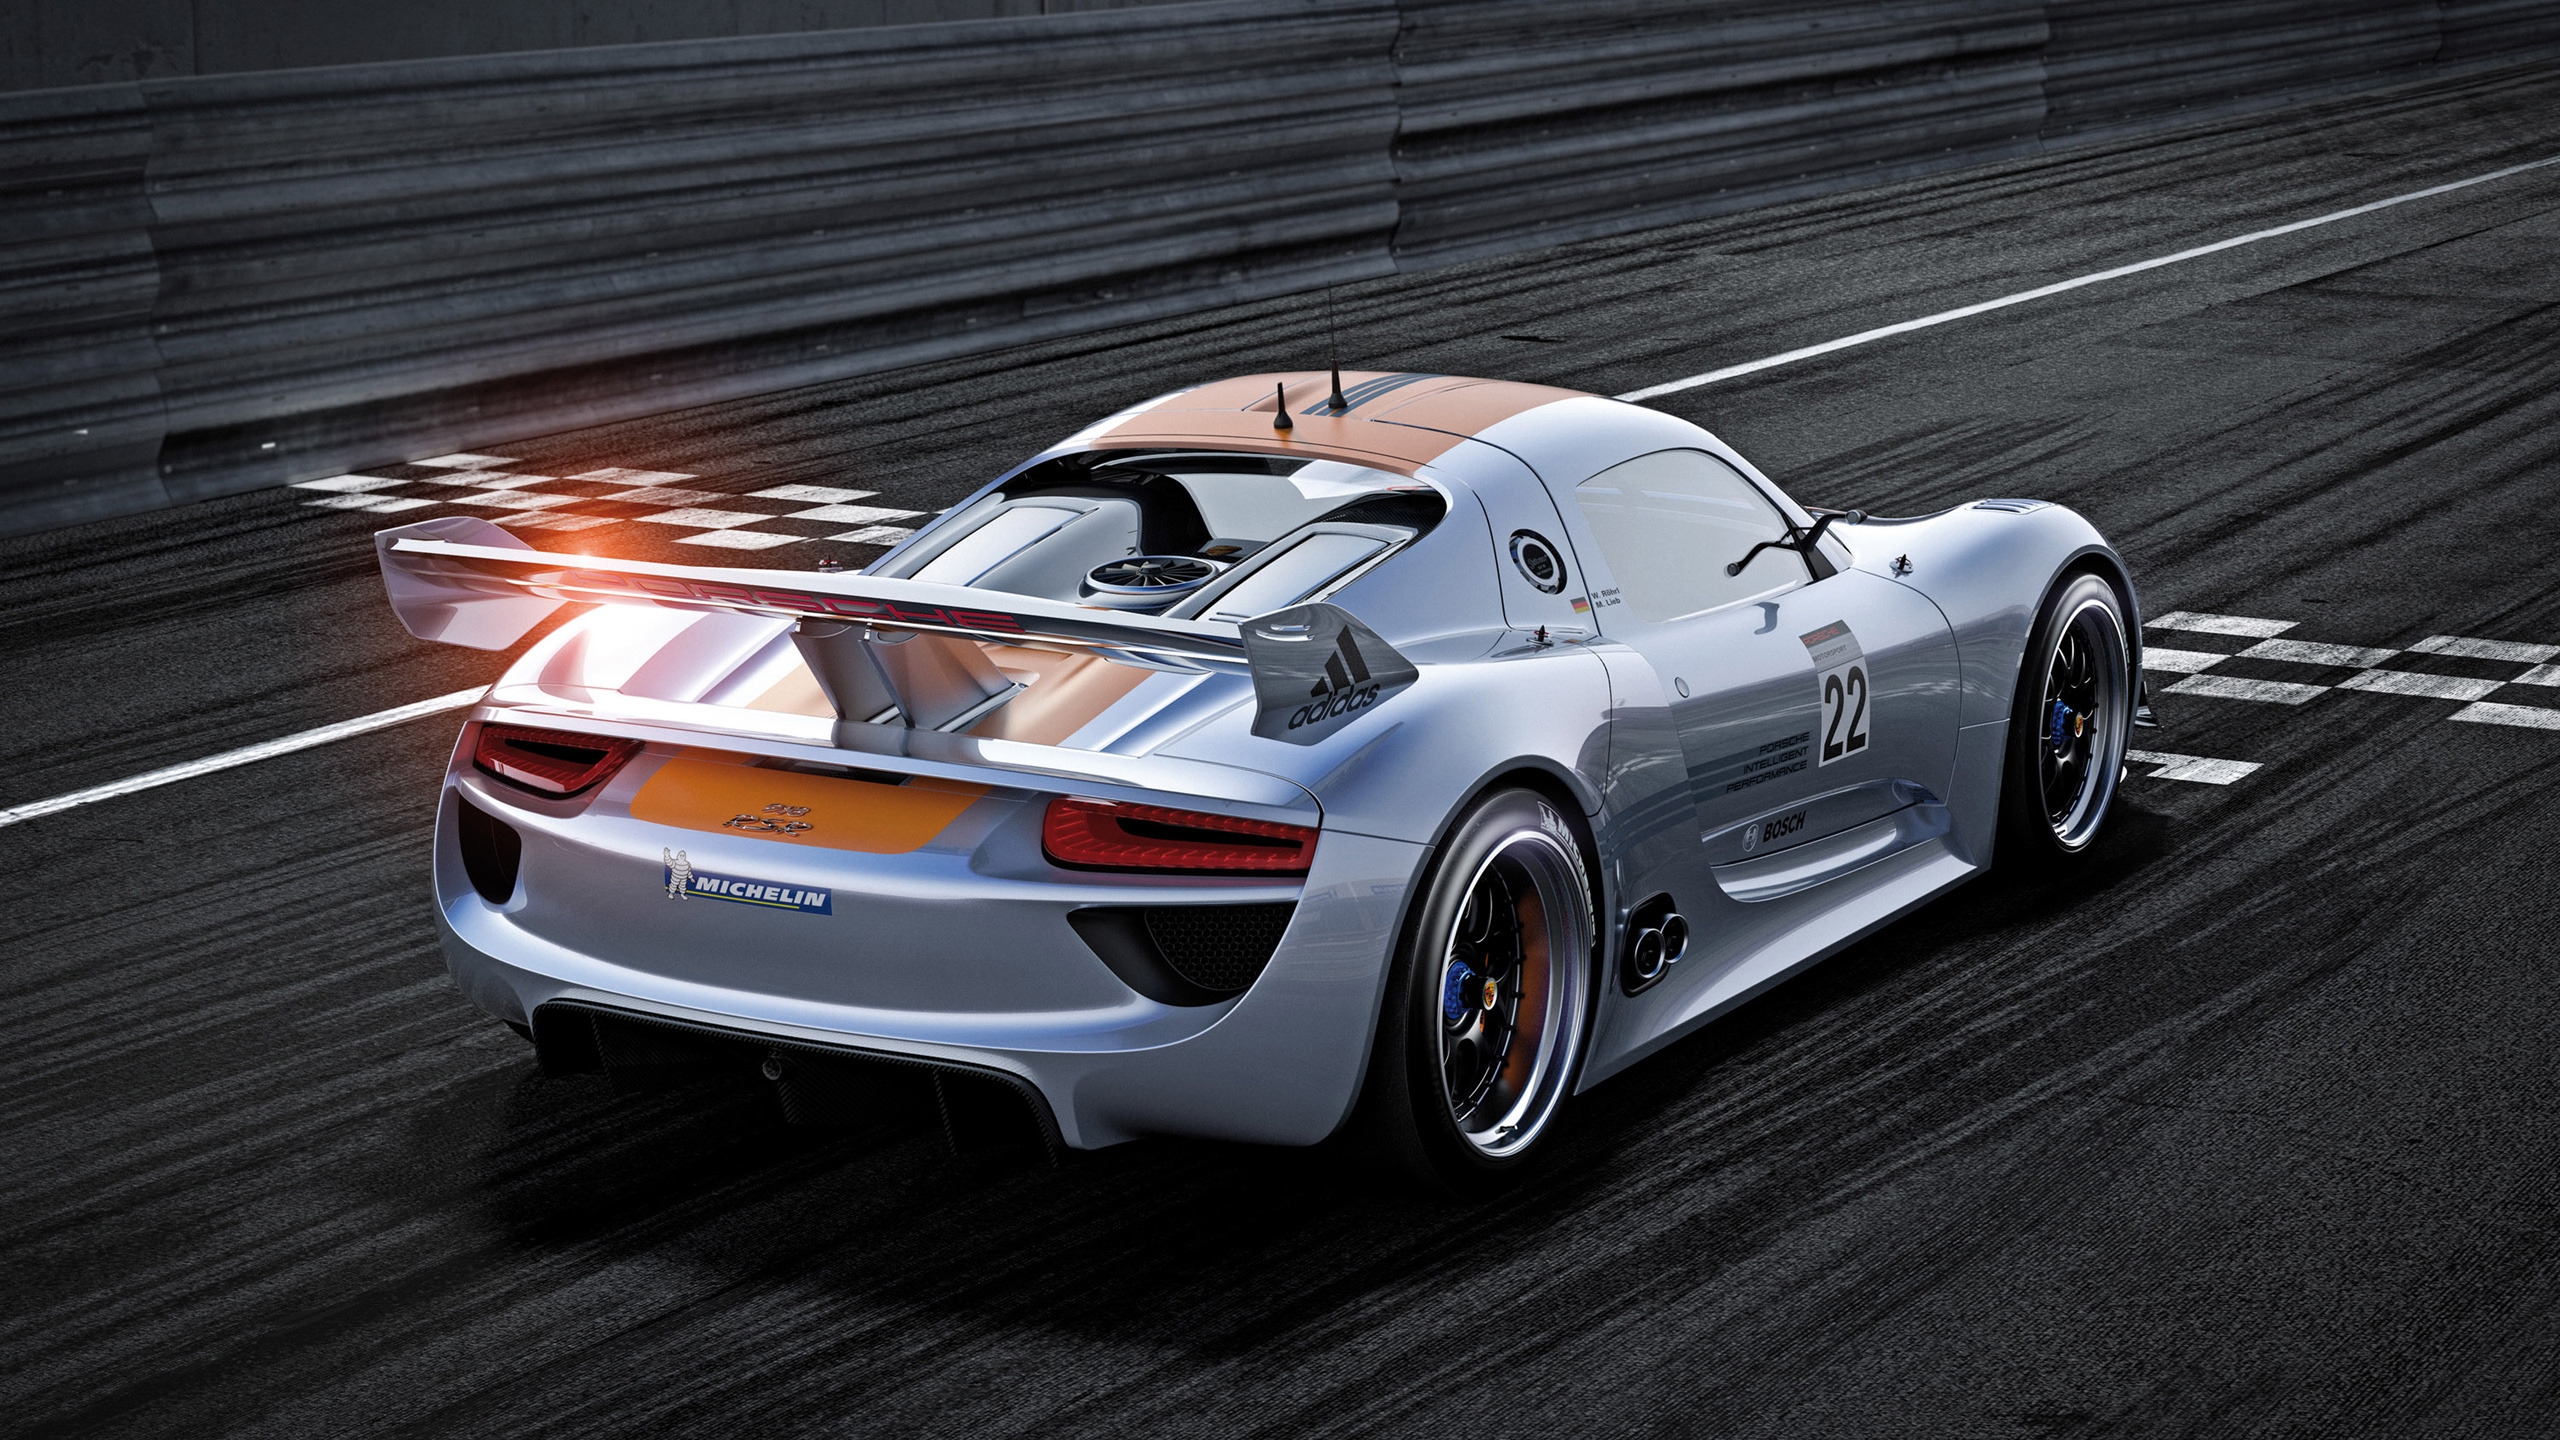 Beautiful Porsche 918 RSR for 2560x1440 HDTV resolution